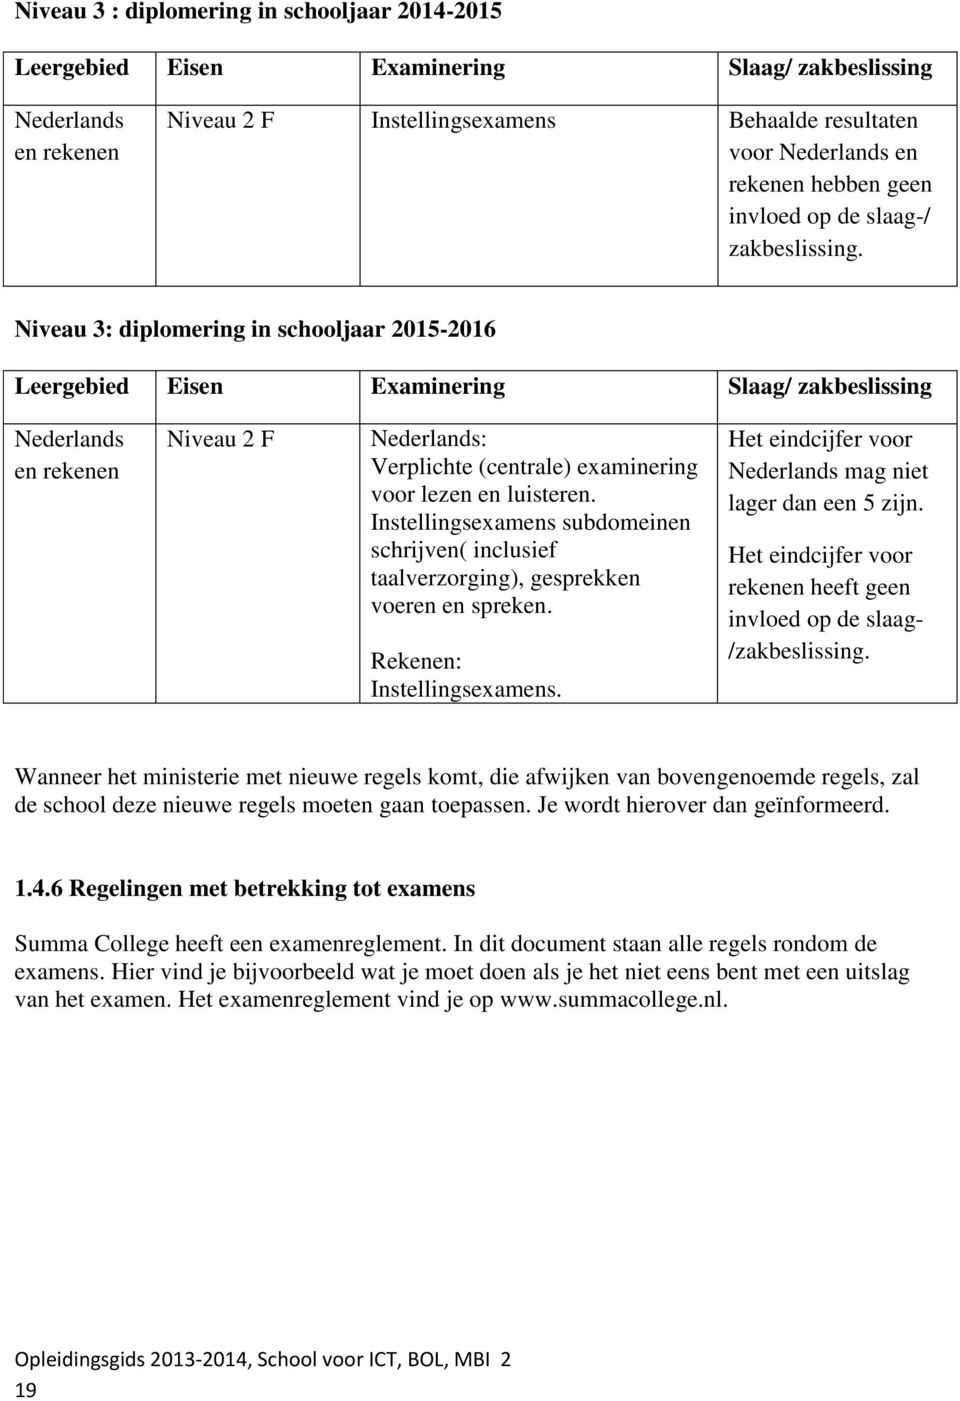 Niveau 3: diplomering in schooljaar 2015-2016 Leergebied Eisen Examinering Slaag/ zakbeslissing en rekenen Niveau 2 F : Verplichte (centrale) examinering voor lezen en luisteren.